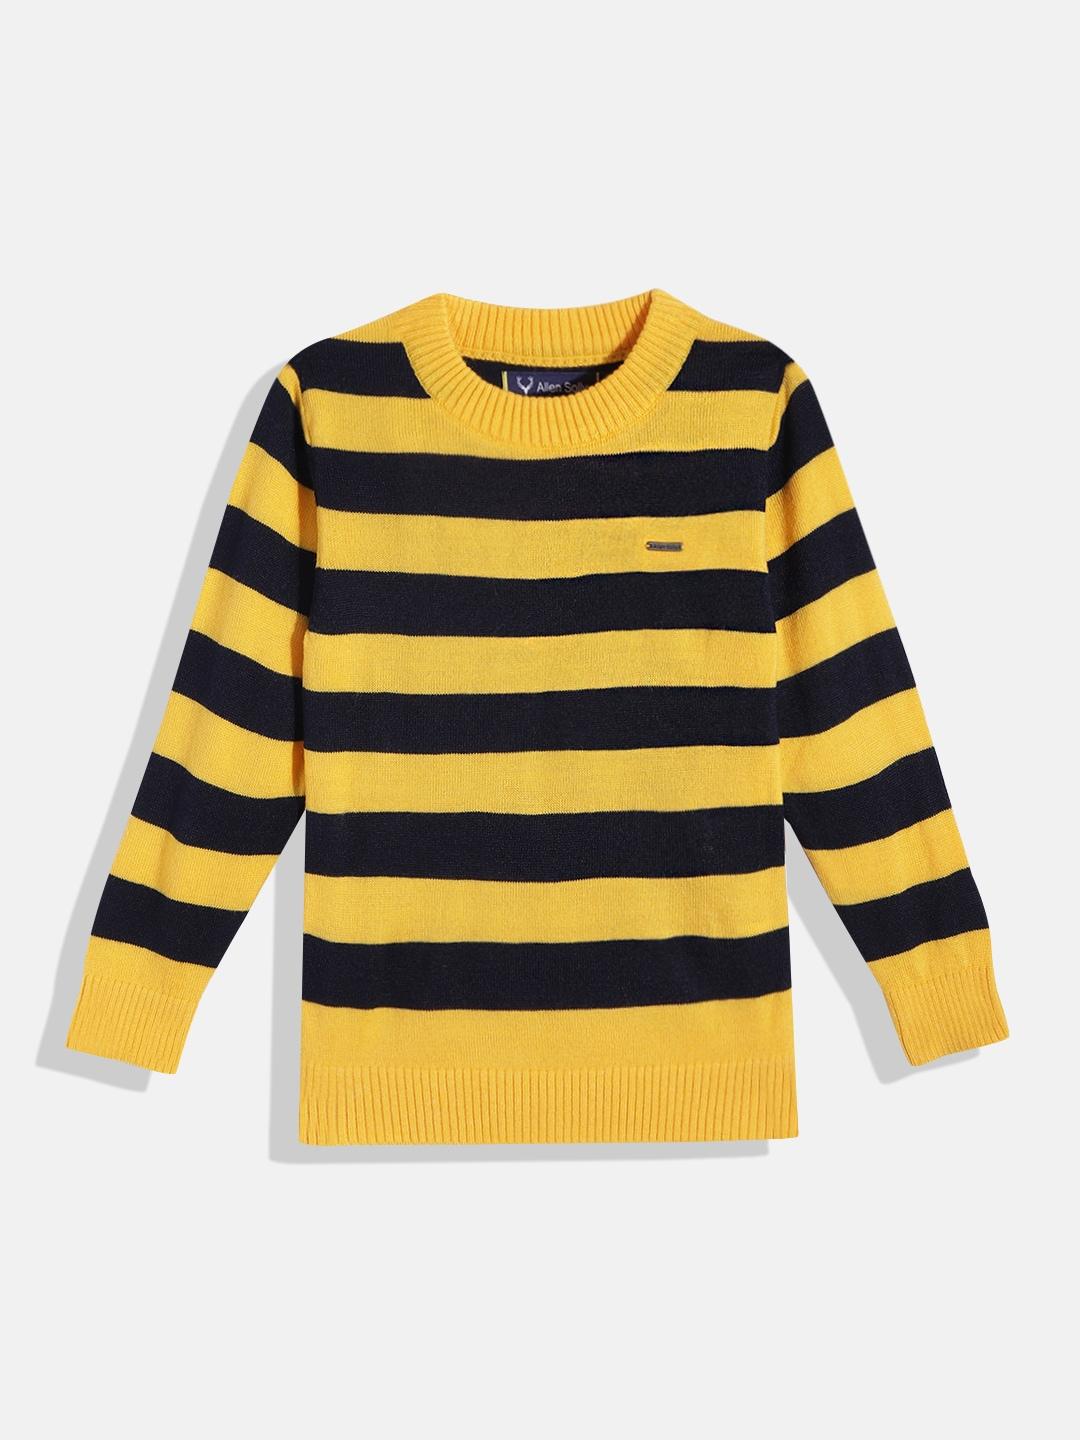 Allen Solly Junior Boys Mustard Yellow & Navy Blue Striped Pullover